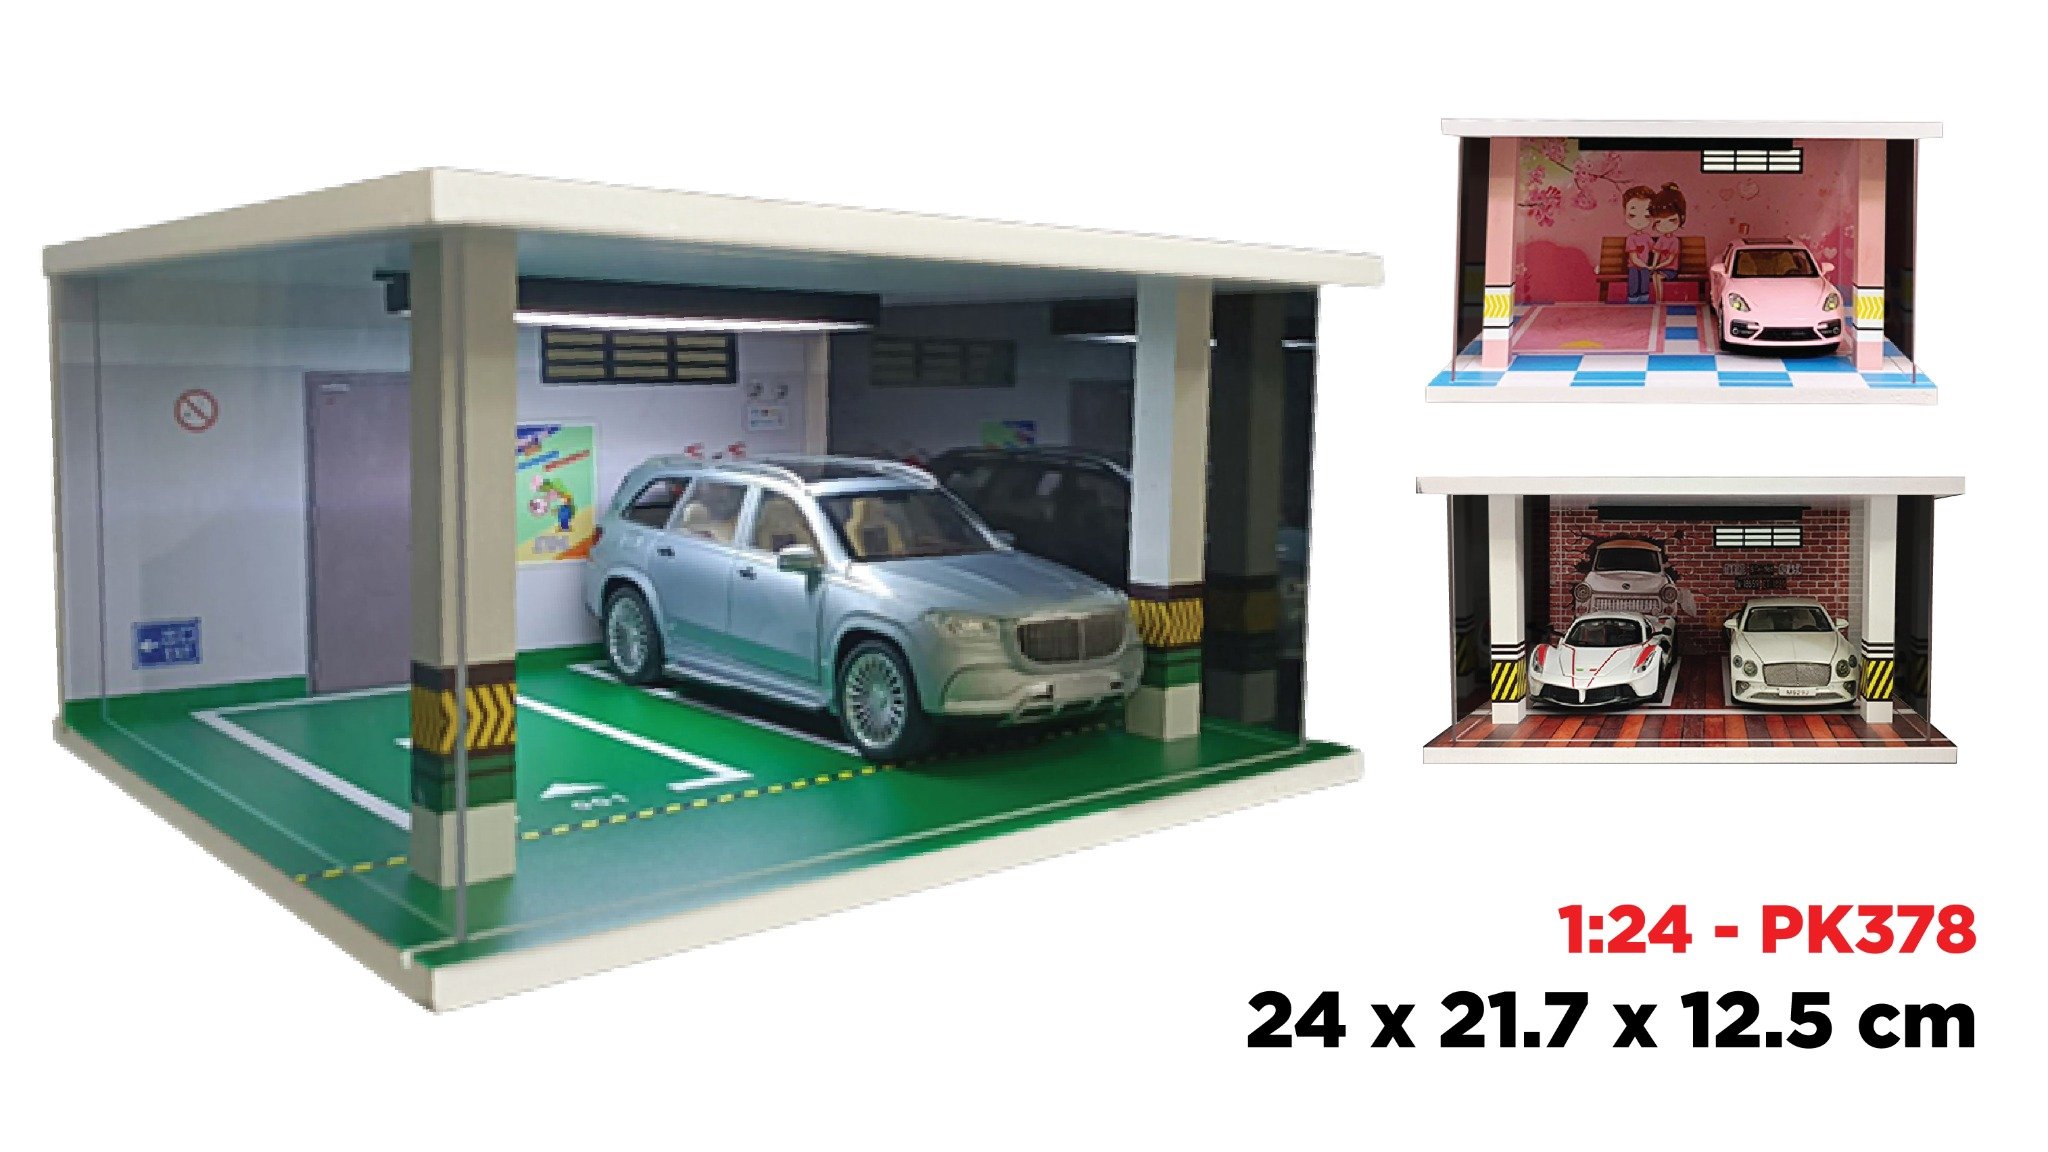  Hộp trưng bày PVC bãi đỗ 2 xe tỉ lệ 1:24 có đèn - có mica 24x21.7x12.5cm PK378 124-2 